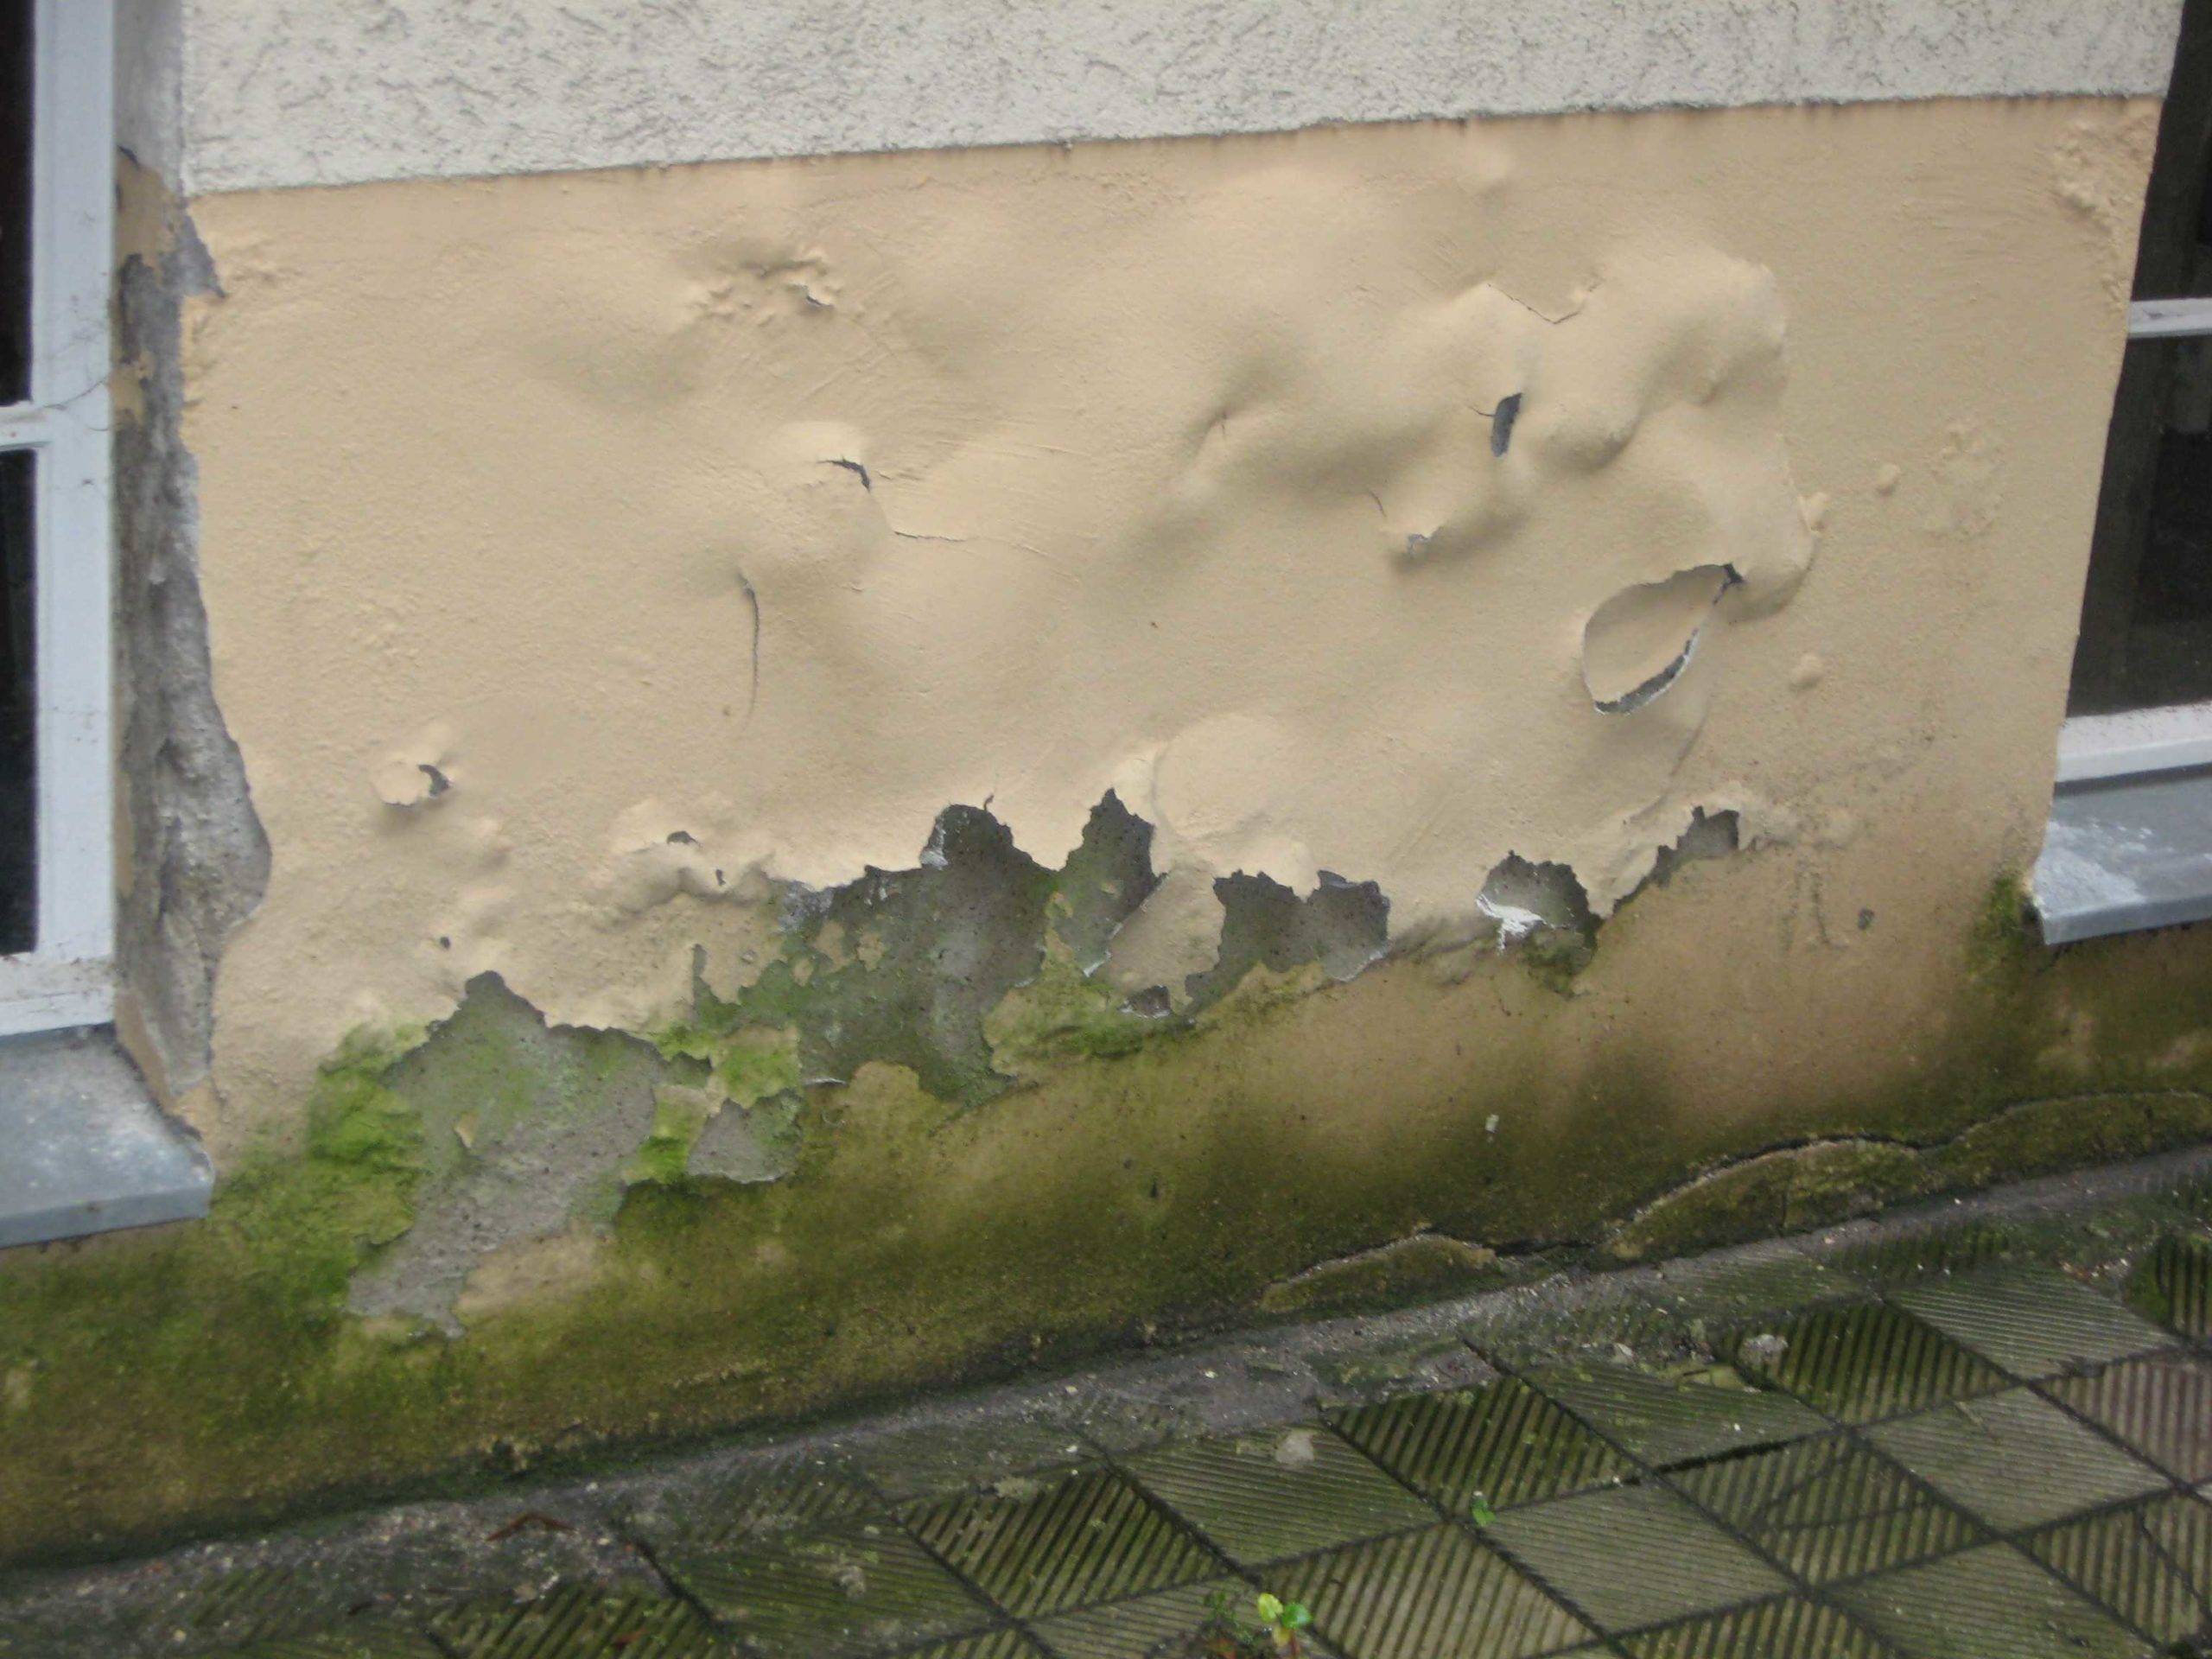 Ремонт штукатурки: причины дефектов стен, заделка трещин, технология устранения осыпаний, плесени и высолов